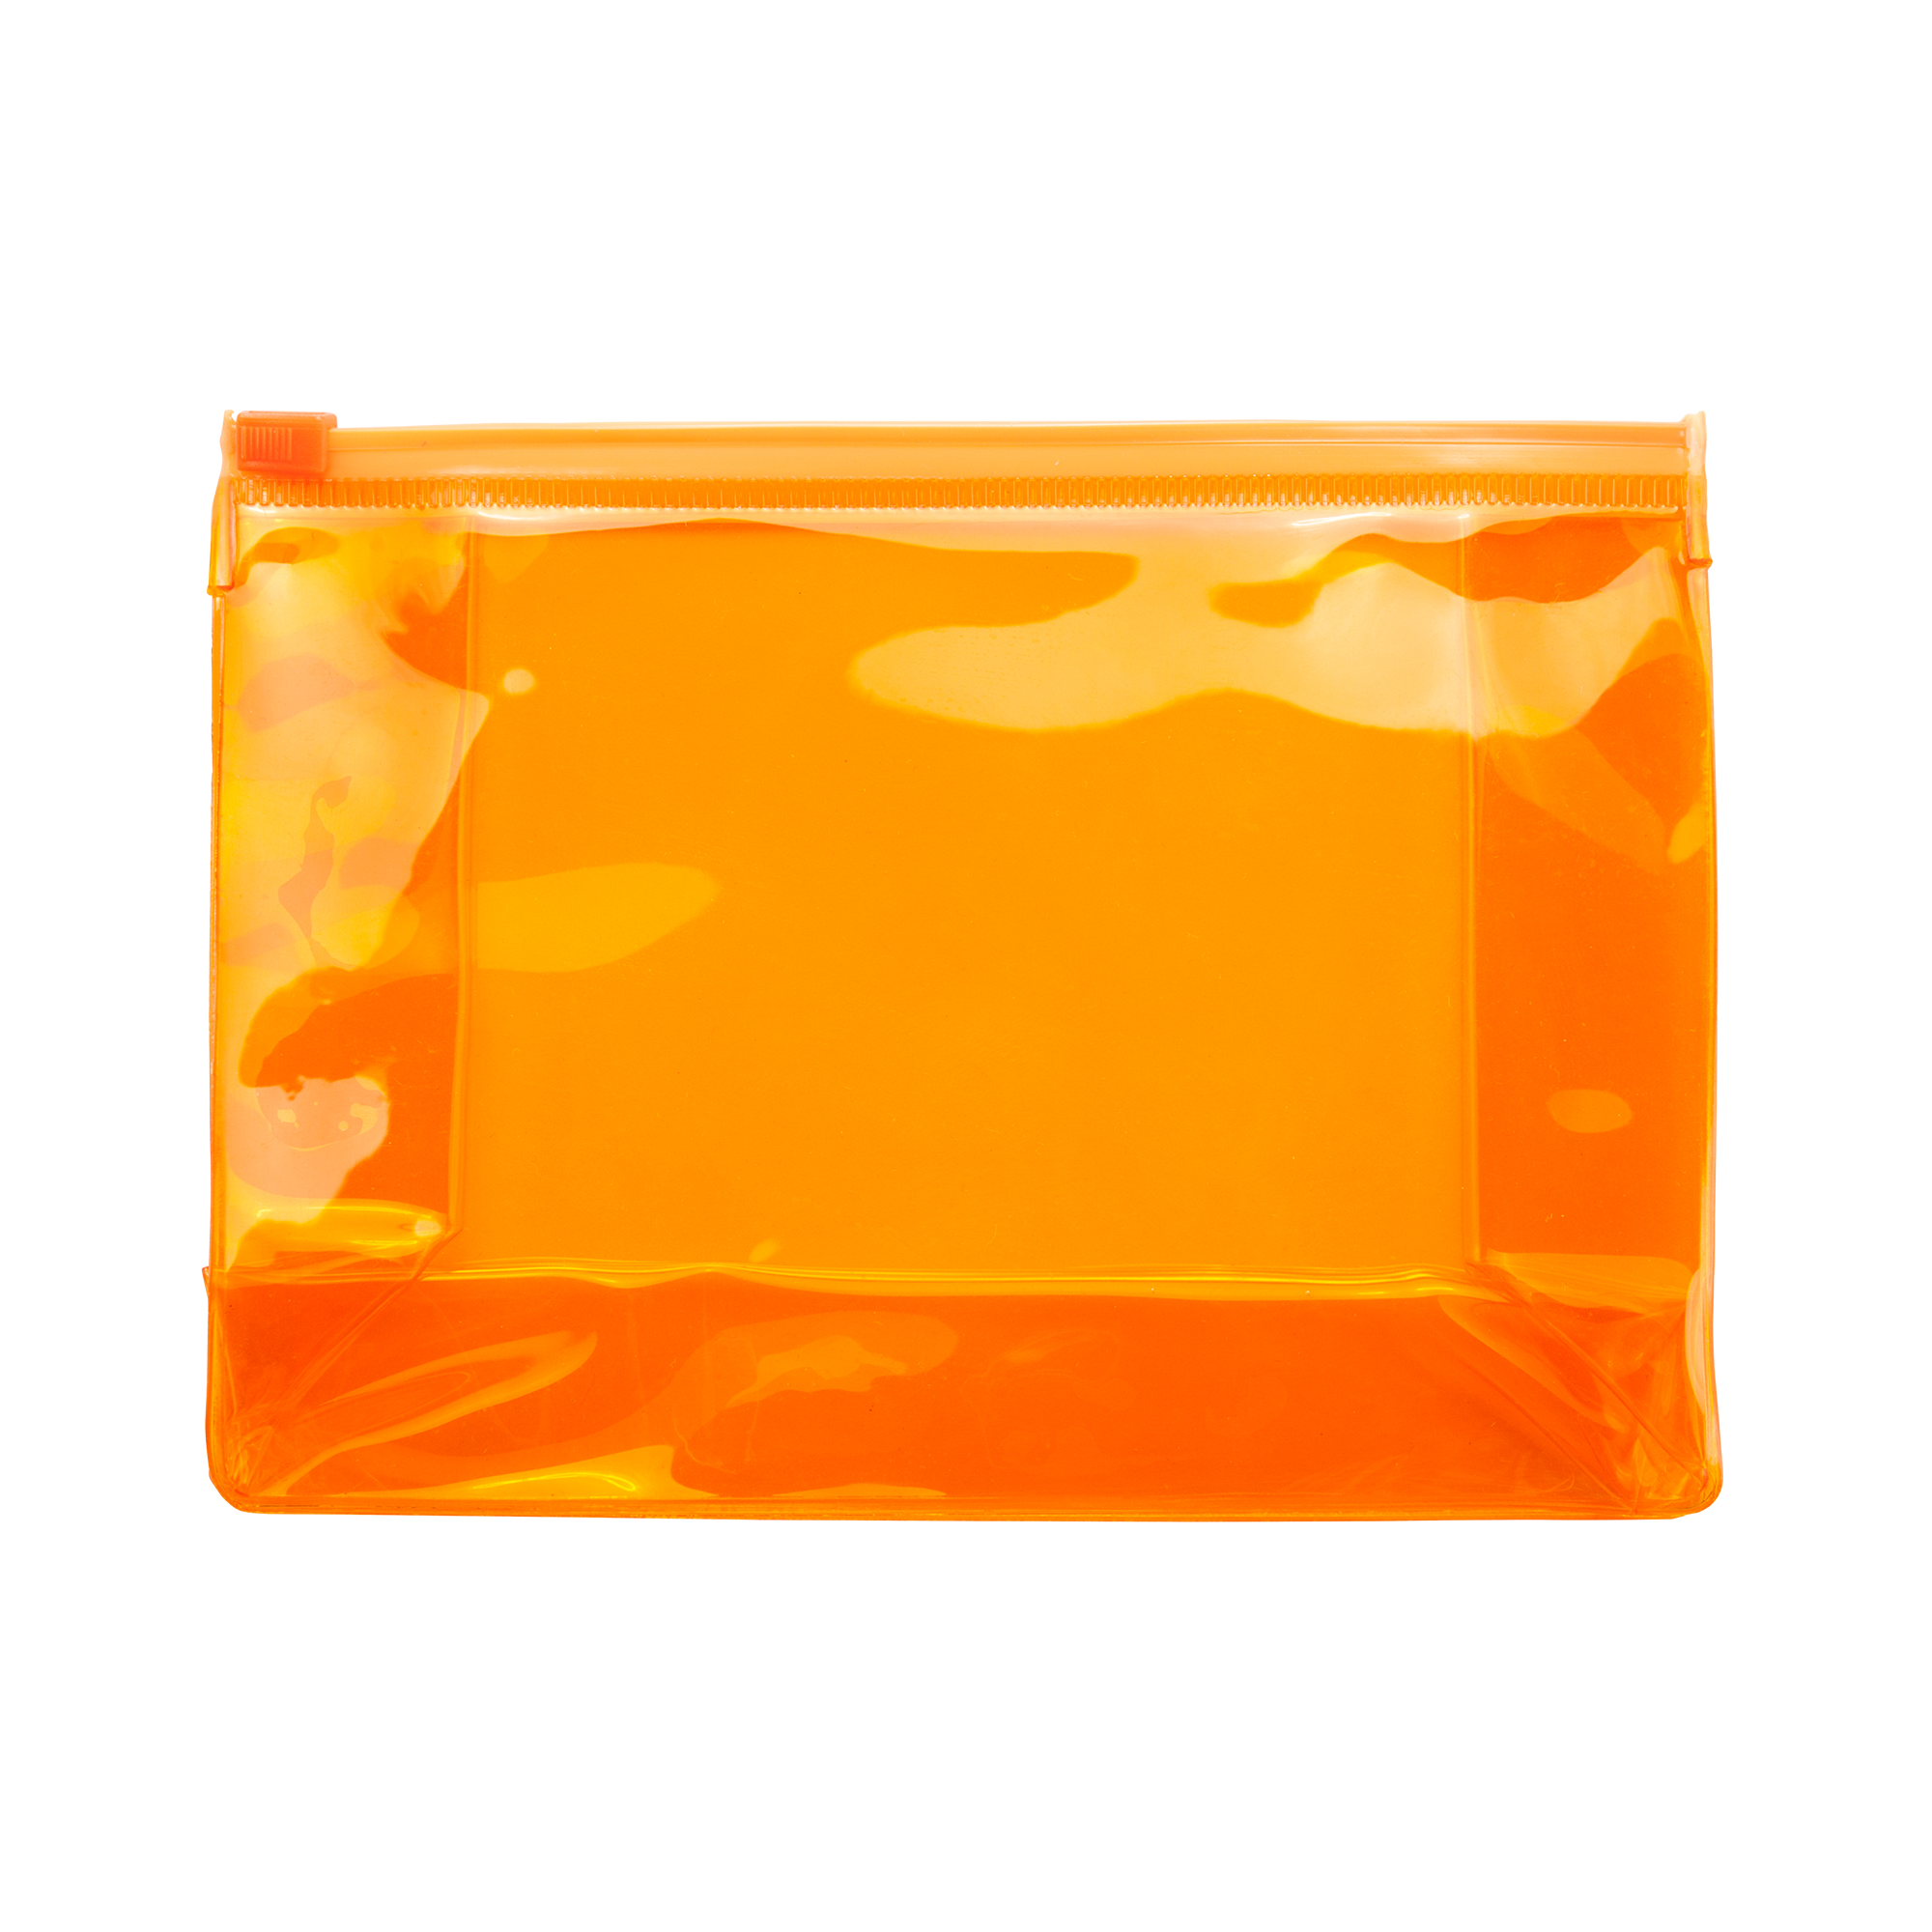 7511-poket-pochette-arancio.jpg